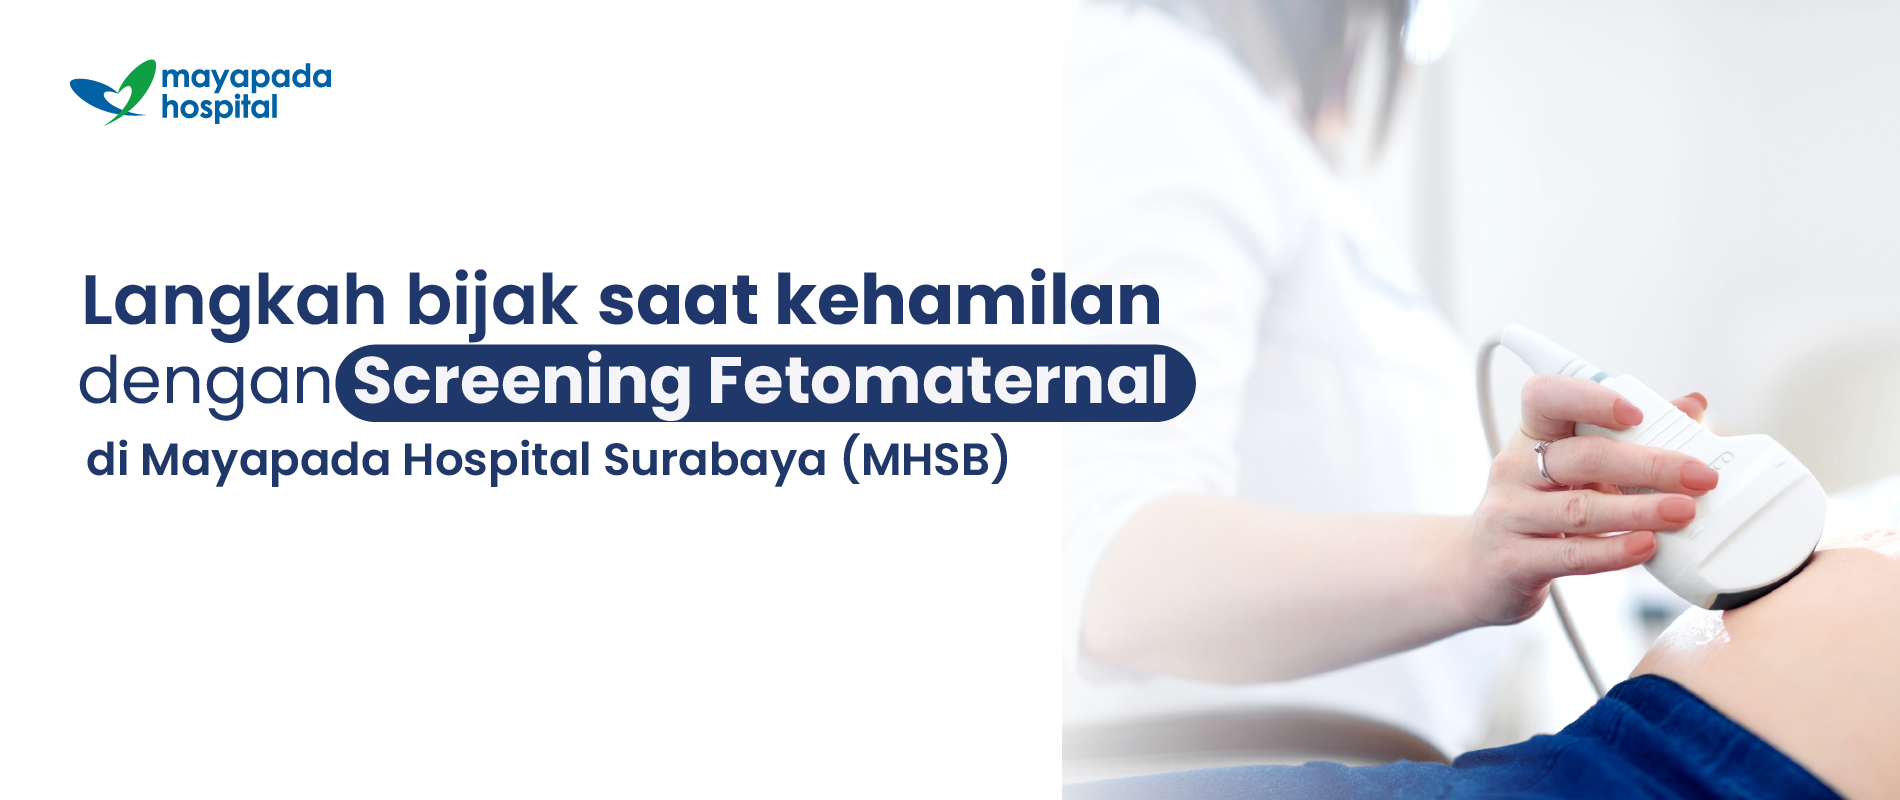 Promo Skrining Fetomaternal Mayapada Hospital Surabaya (MHSB) IMG